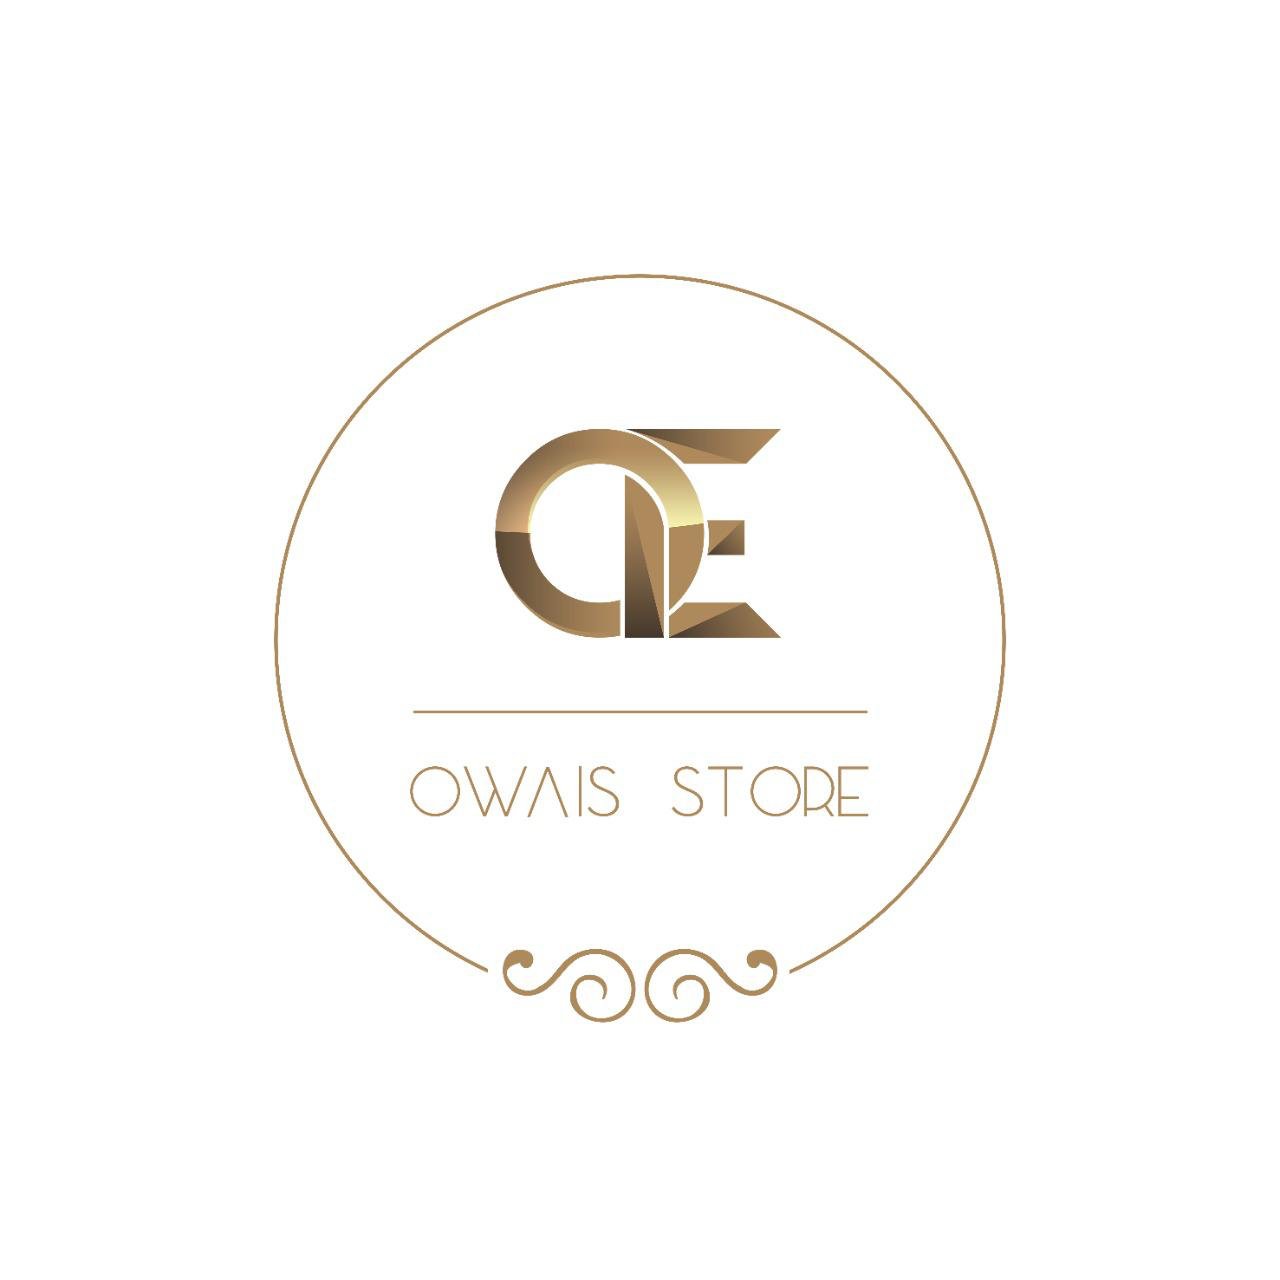 Owais store